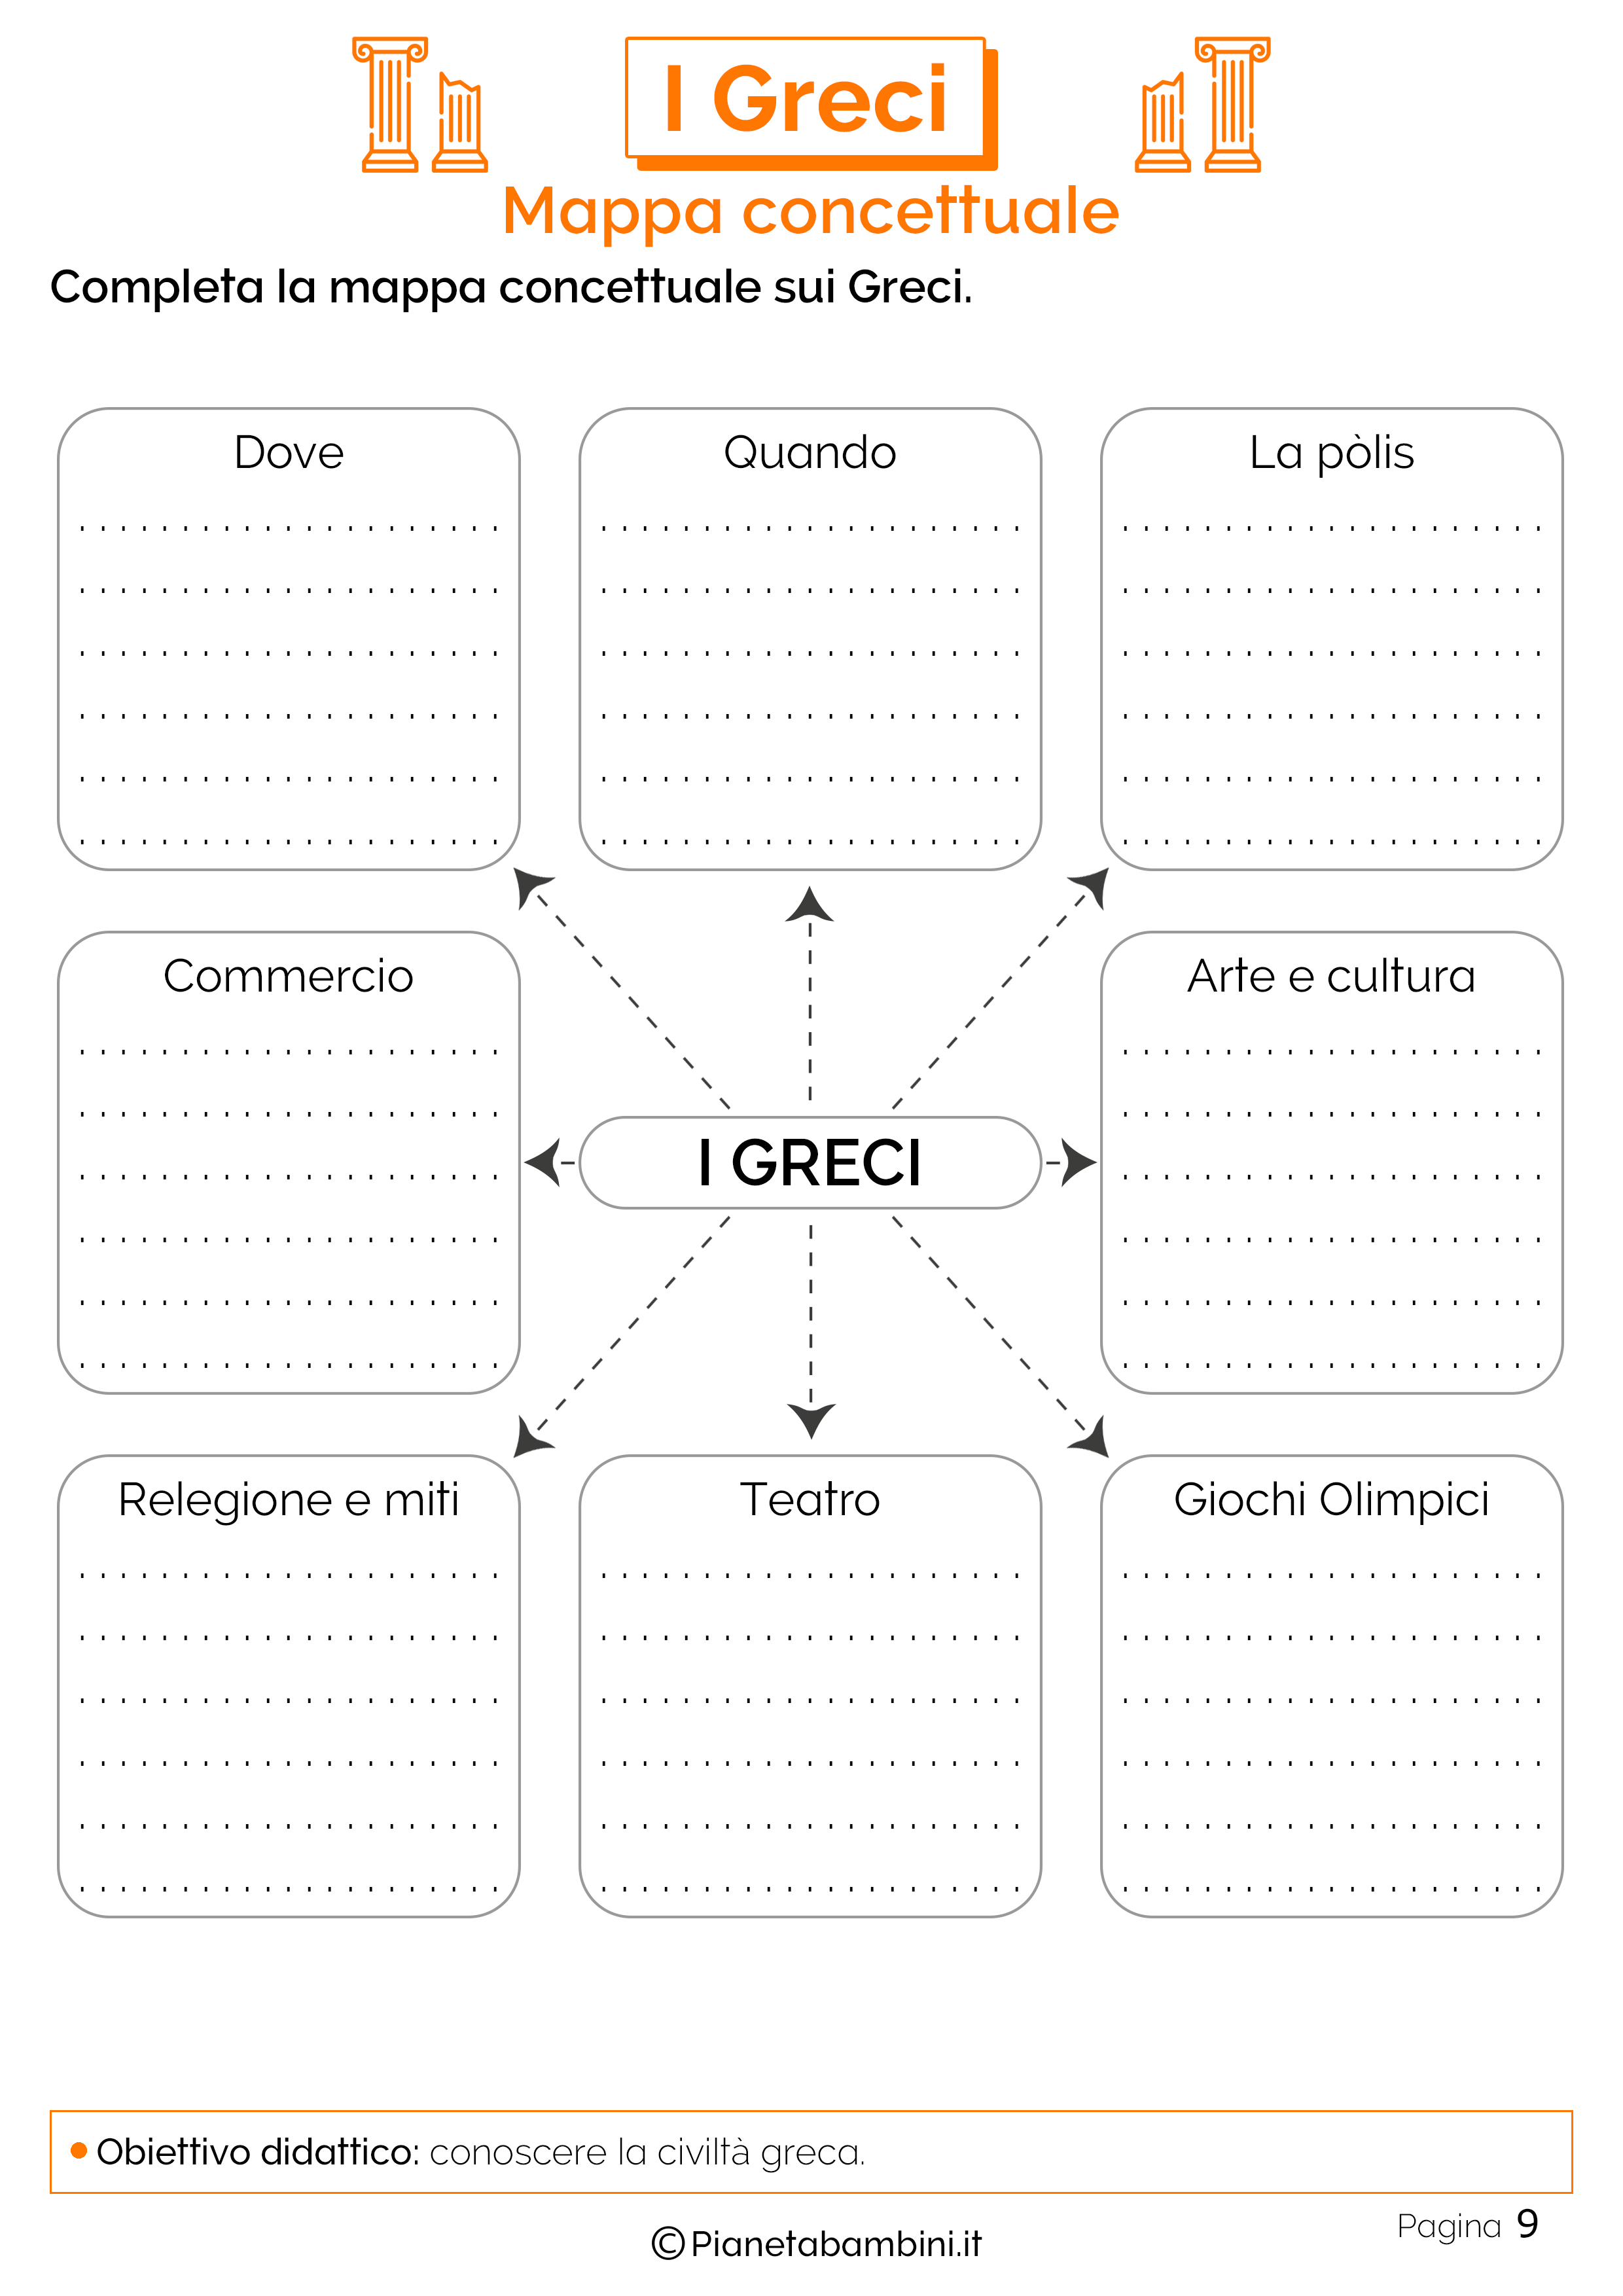 Mappa concettuale sui greci